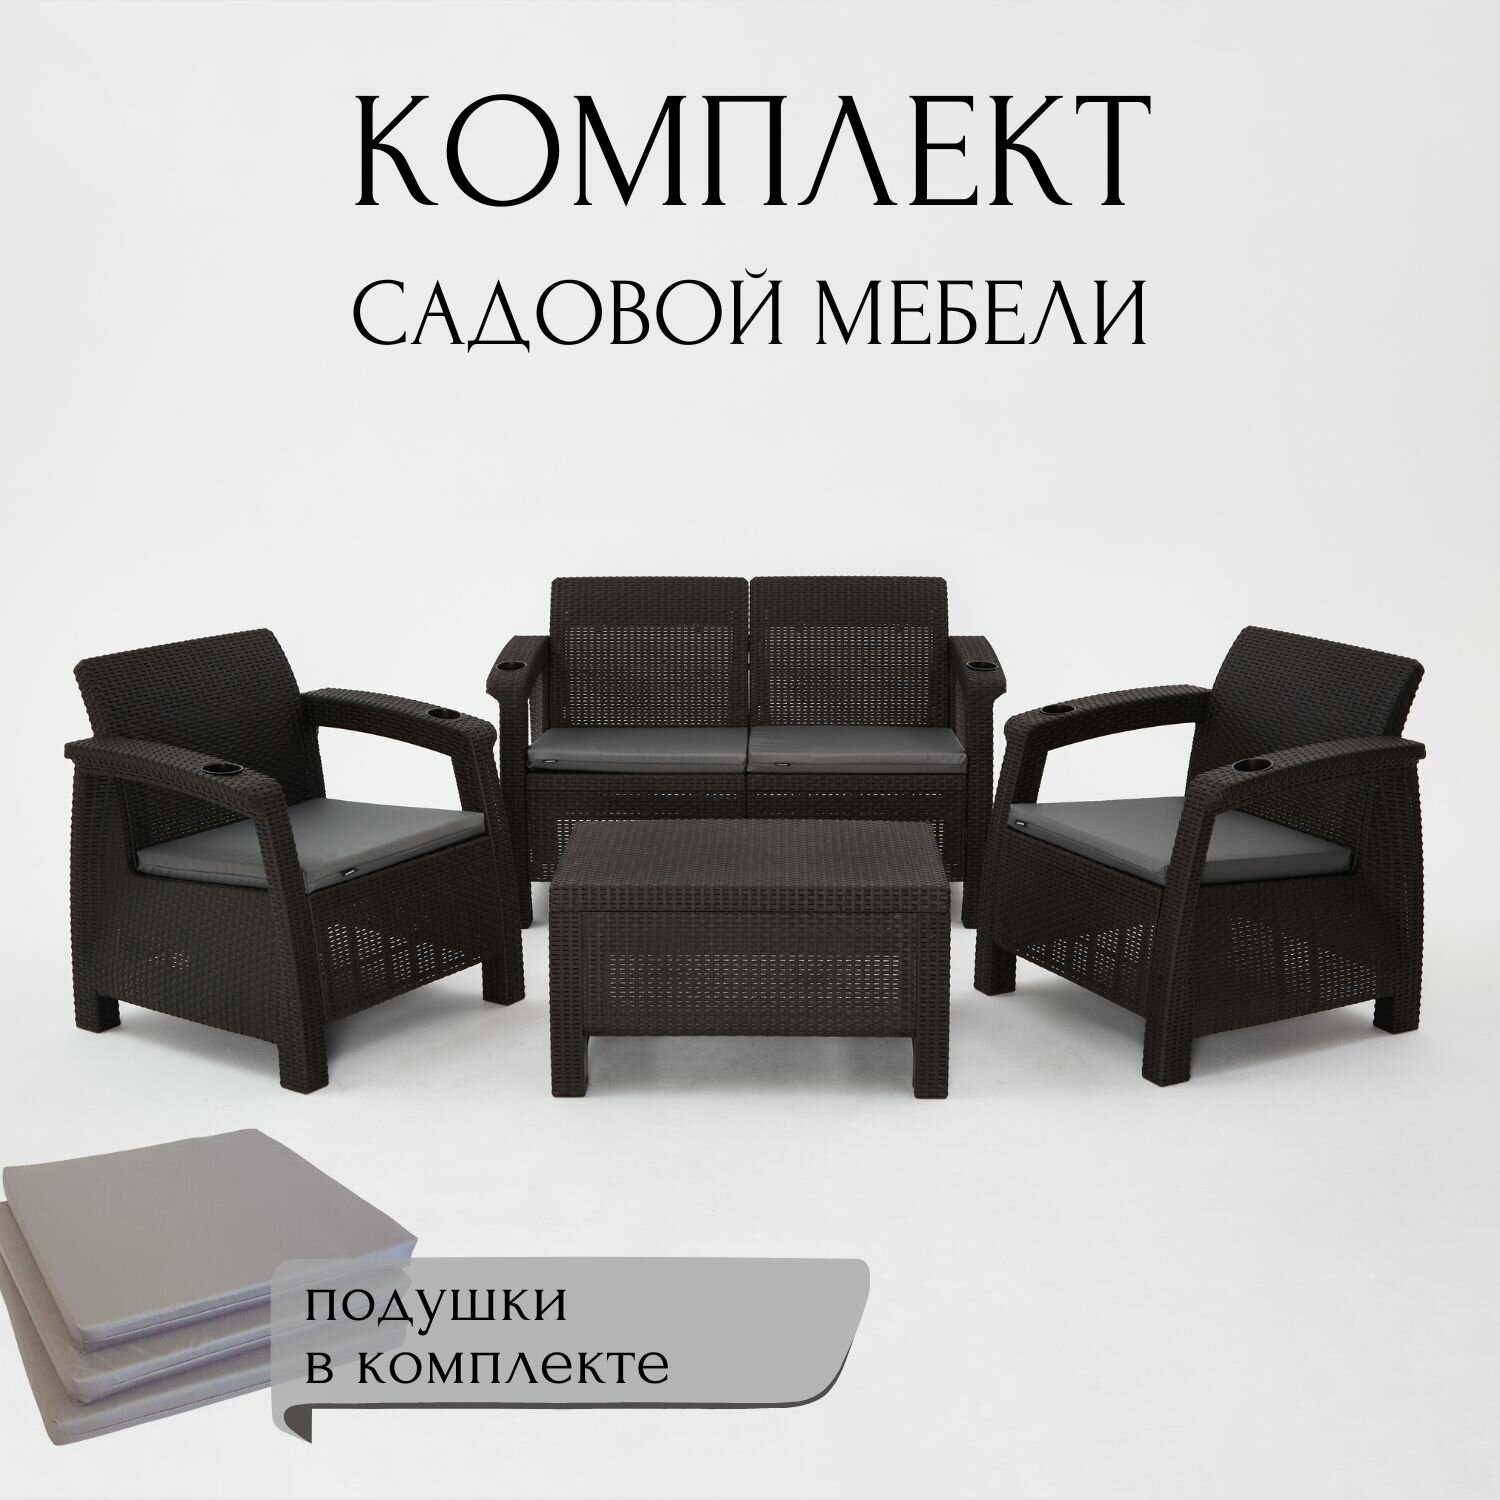 Комплект садовой мебели HomlyGreen Set 2+1+1+Кофейный столик+подушки серого цвета